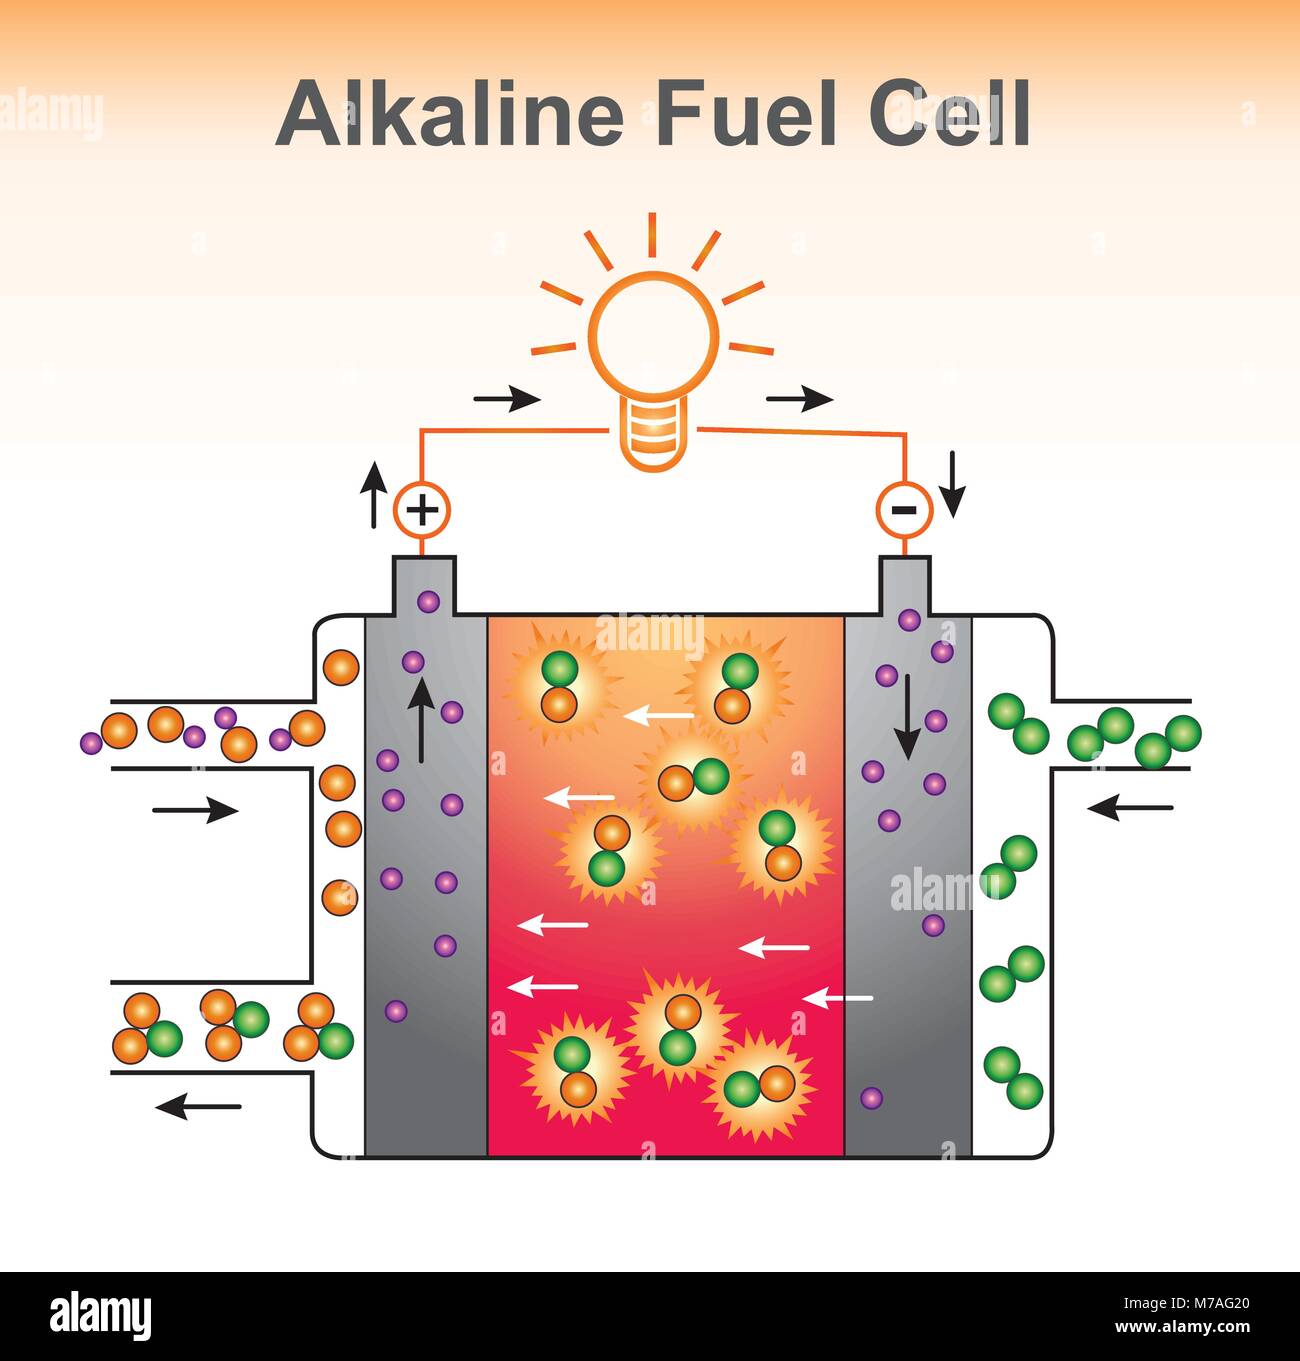 La structure de la pile à combustible alcaline. Conception graphique de vecteur. Illustration de Vecteur